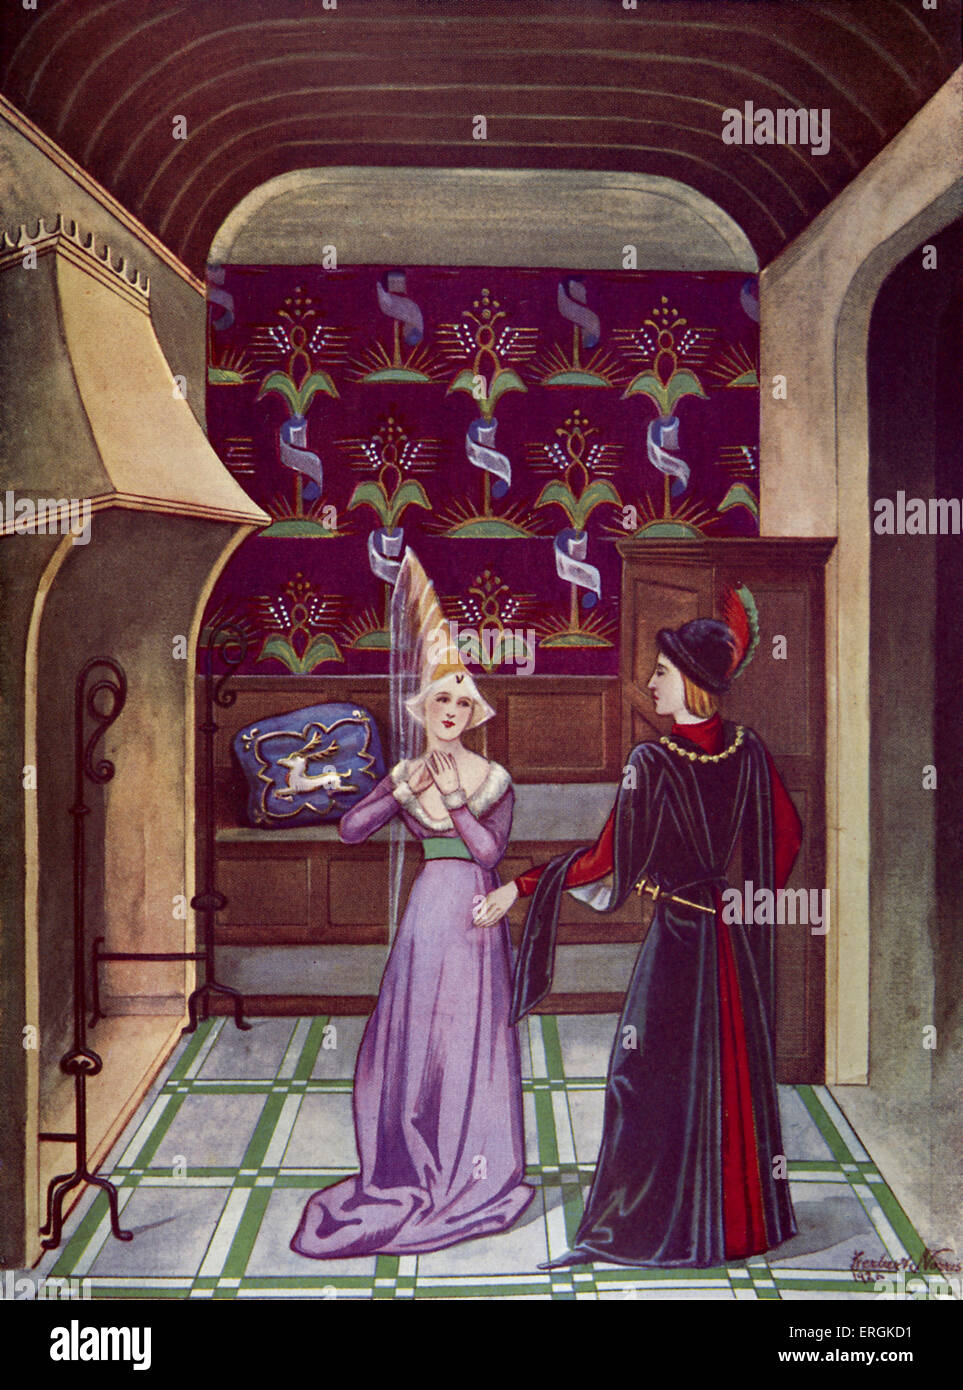 Un couple d'aristocrates, fin du 15e siècle. Cette scène semble représenter un épisode de l'amour courtois . Herbert Norris artiste Banque D'Images